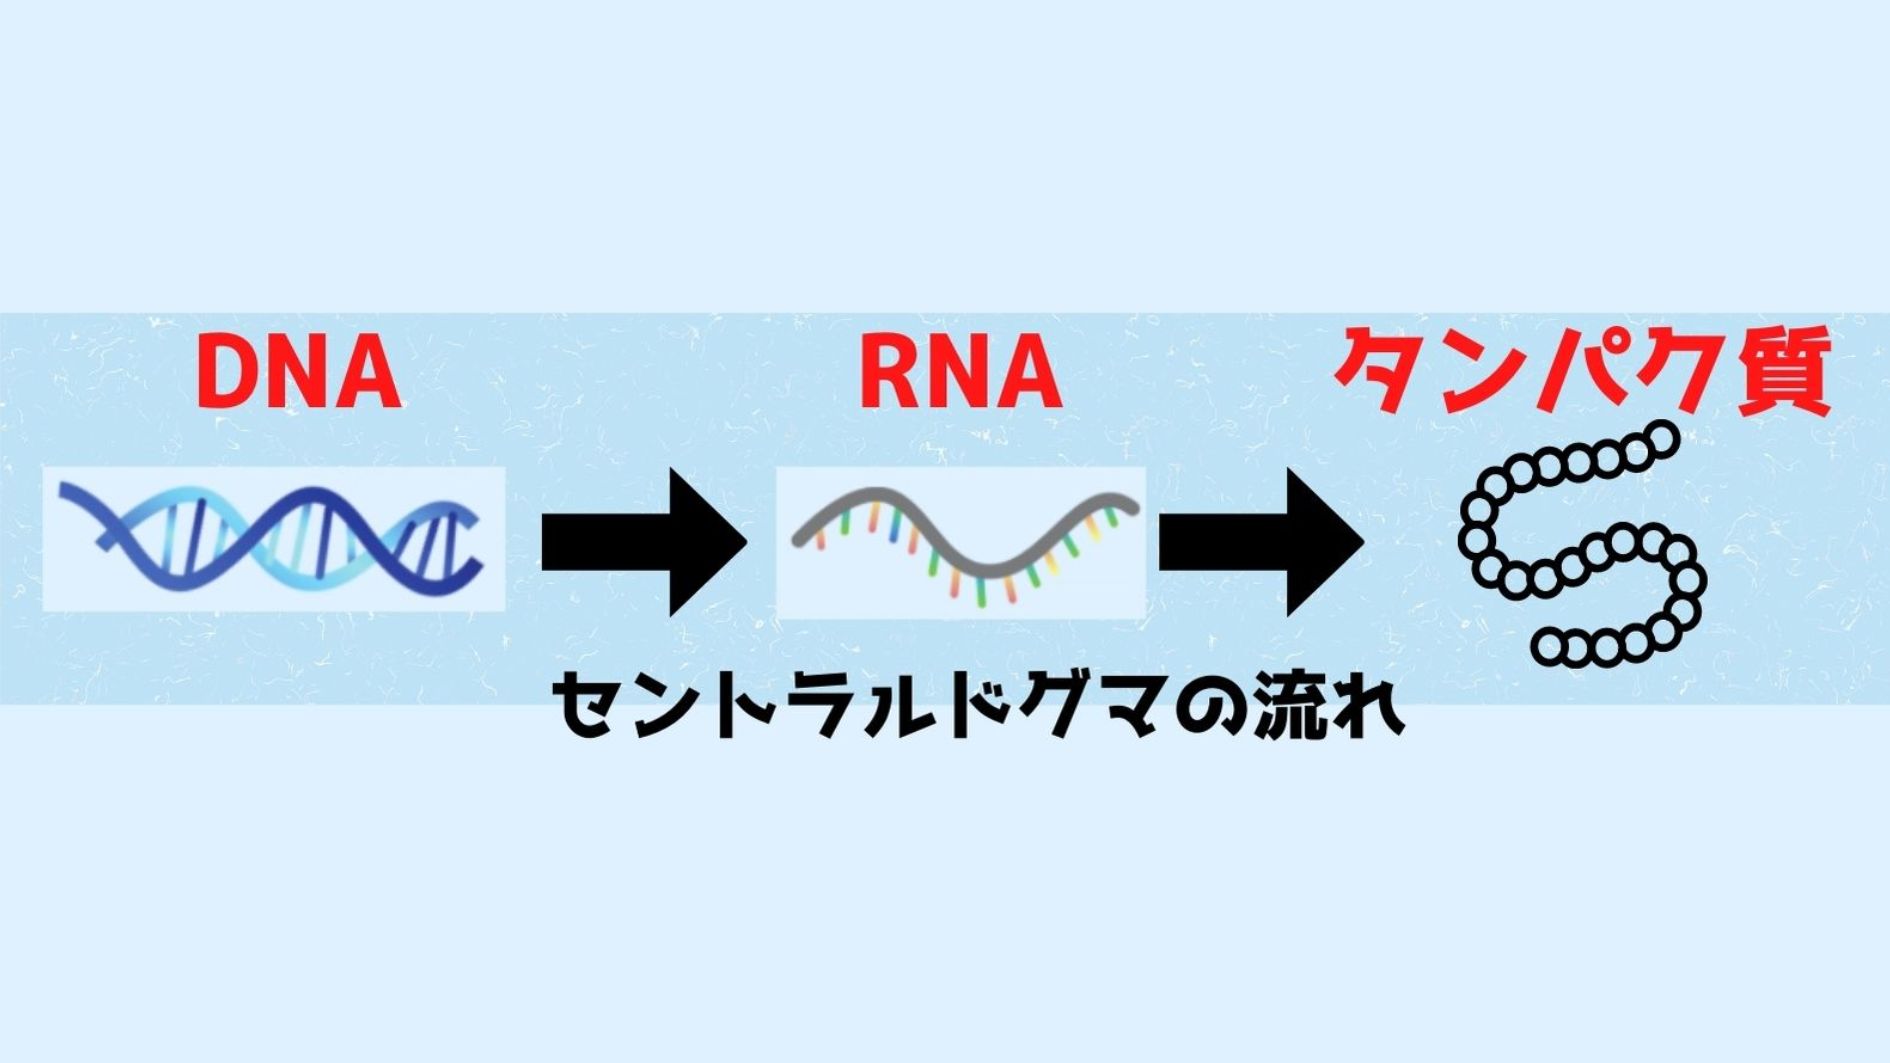 RNAは生命の設計図たるDNAの部分写しです。 建物の施工でも常に全体が描かれている大元の設計図を参照しないのと同じように、多種多様なタンパク質が作られるときにも、大元の情報源であるDNAではなく、その部分写しであるRNAが使われます。